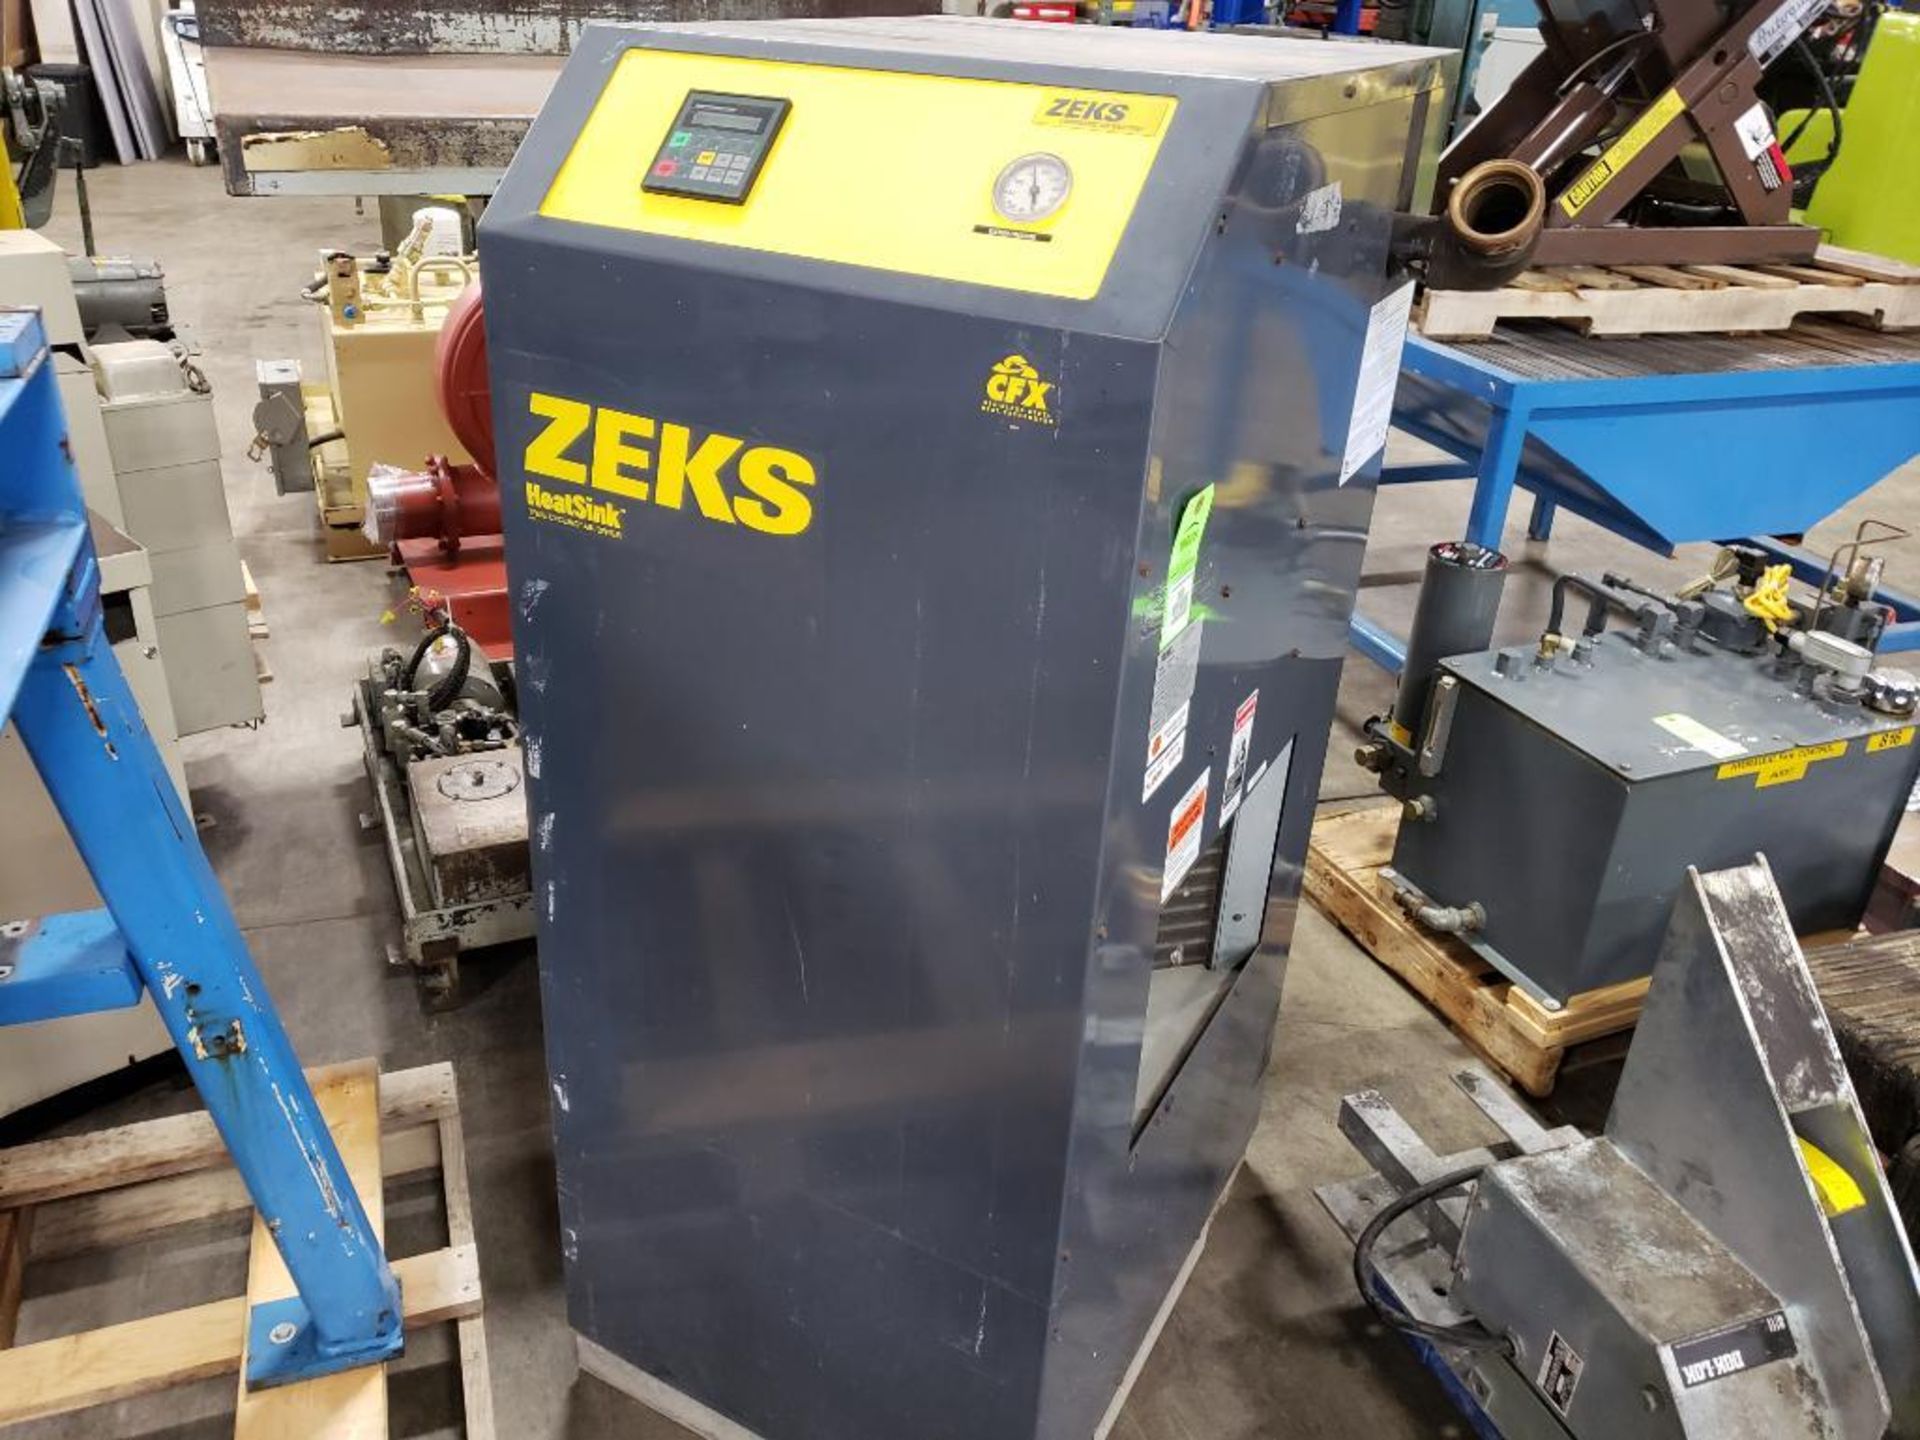 Zeks compressed air dryer. Model 400HSGA400. 3 phase 460v.